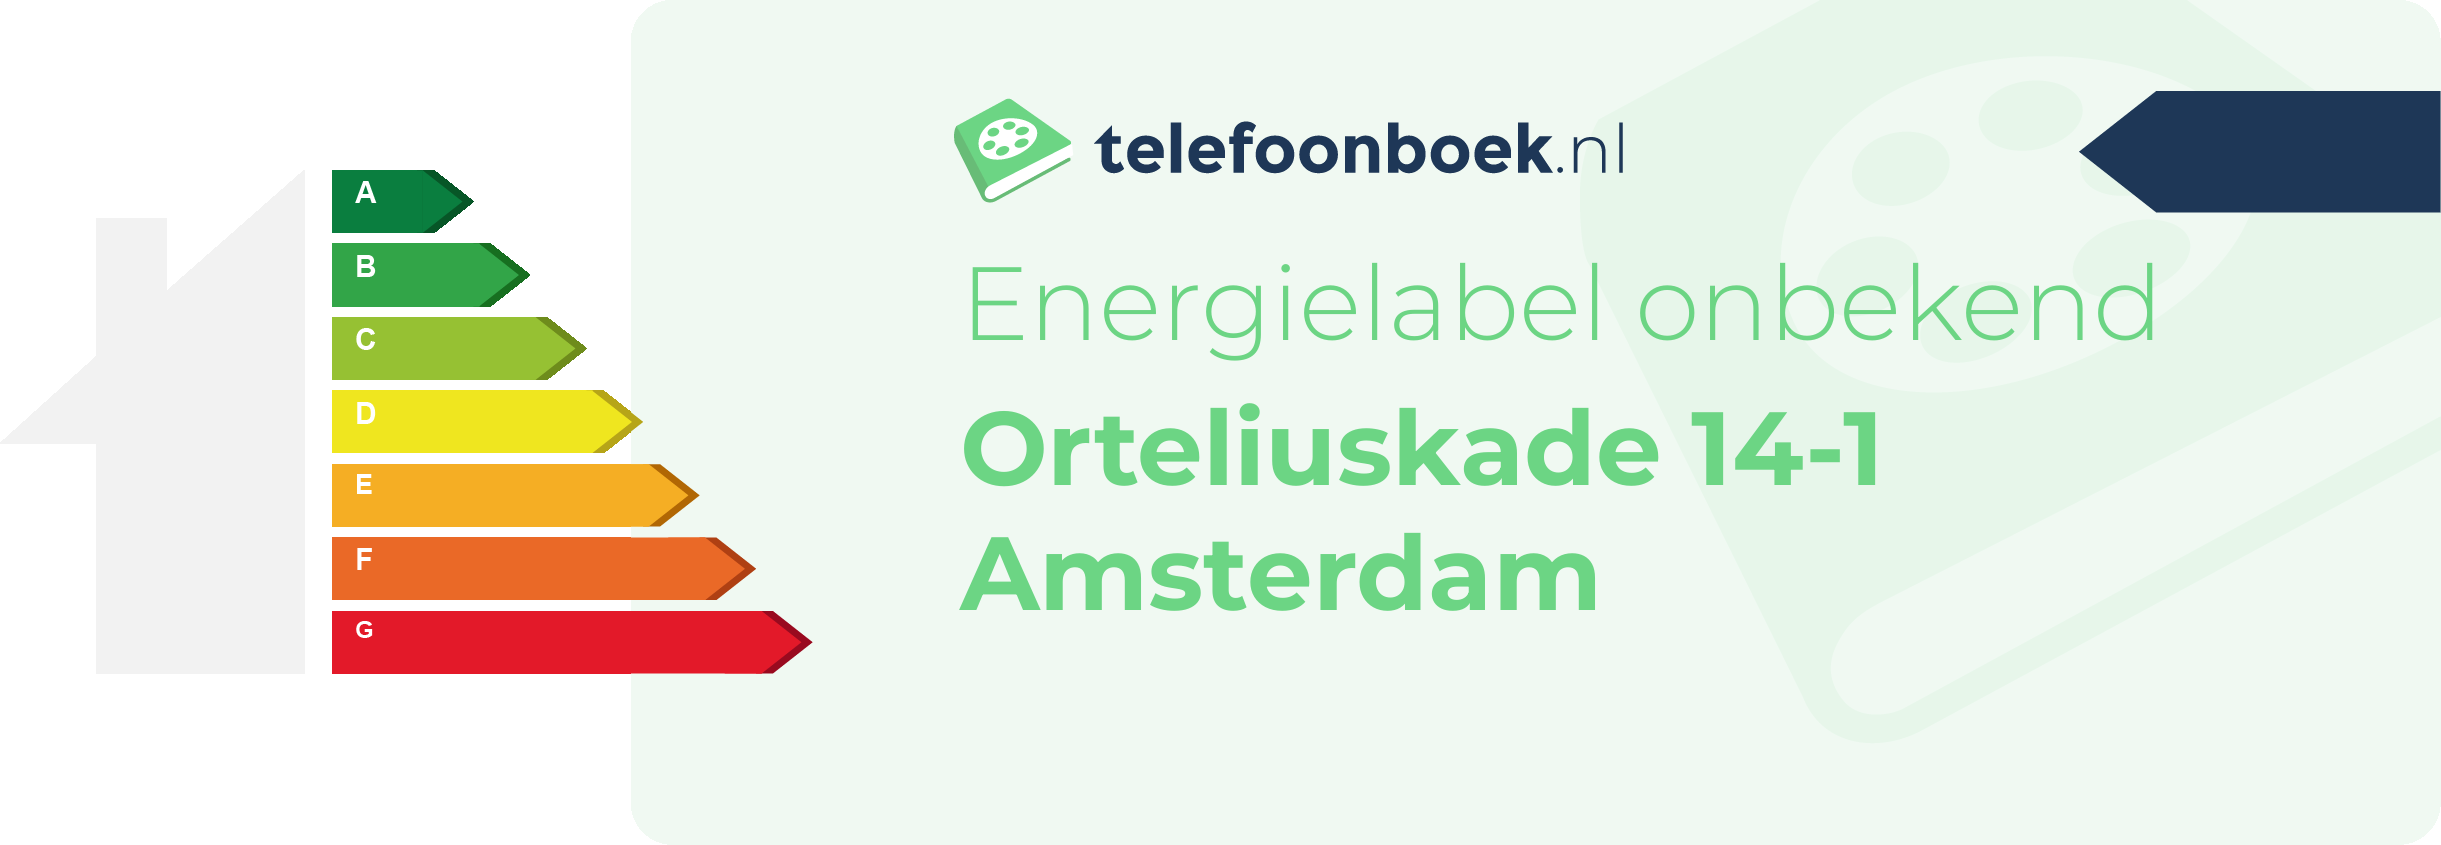 Energielabel Orteliuskade 14-1 Amsterdam